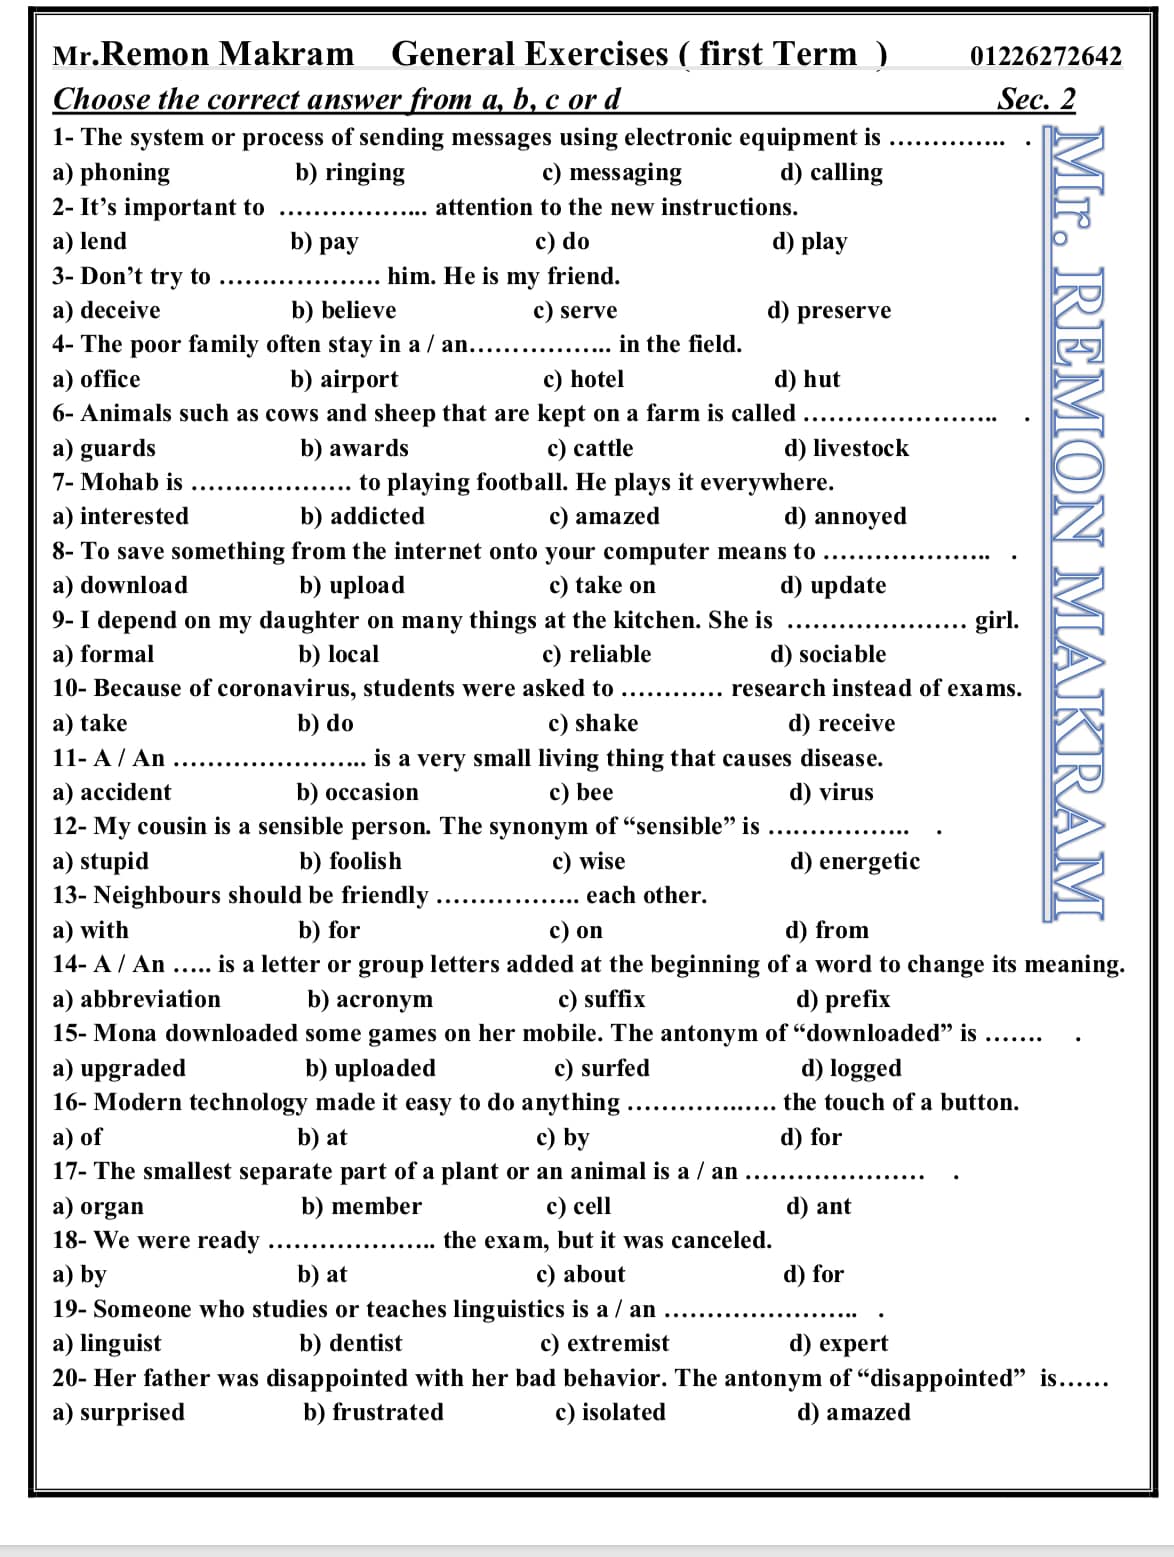 لغة انجليزية | كل الأجزاء الاختيارية للمراجعة النهائية للصف الثانى الثانوى 11